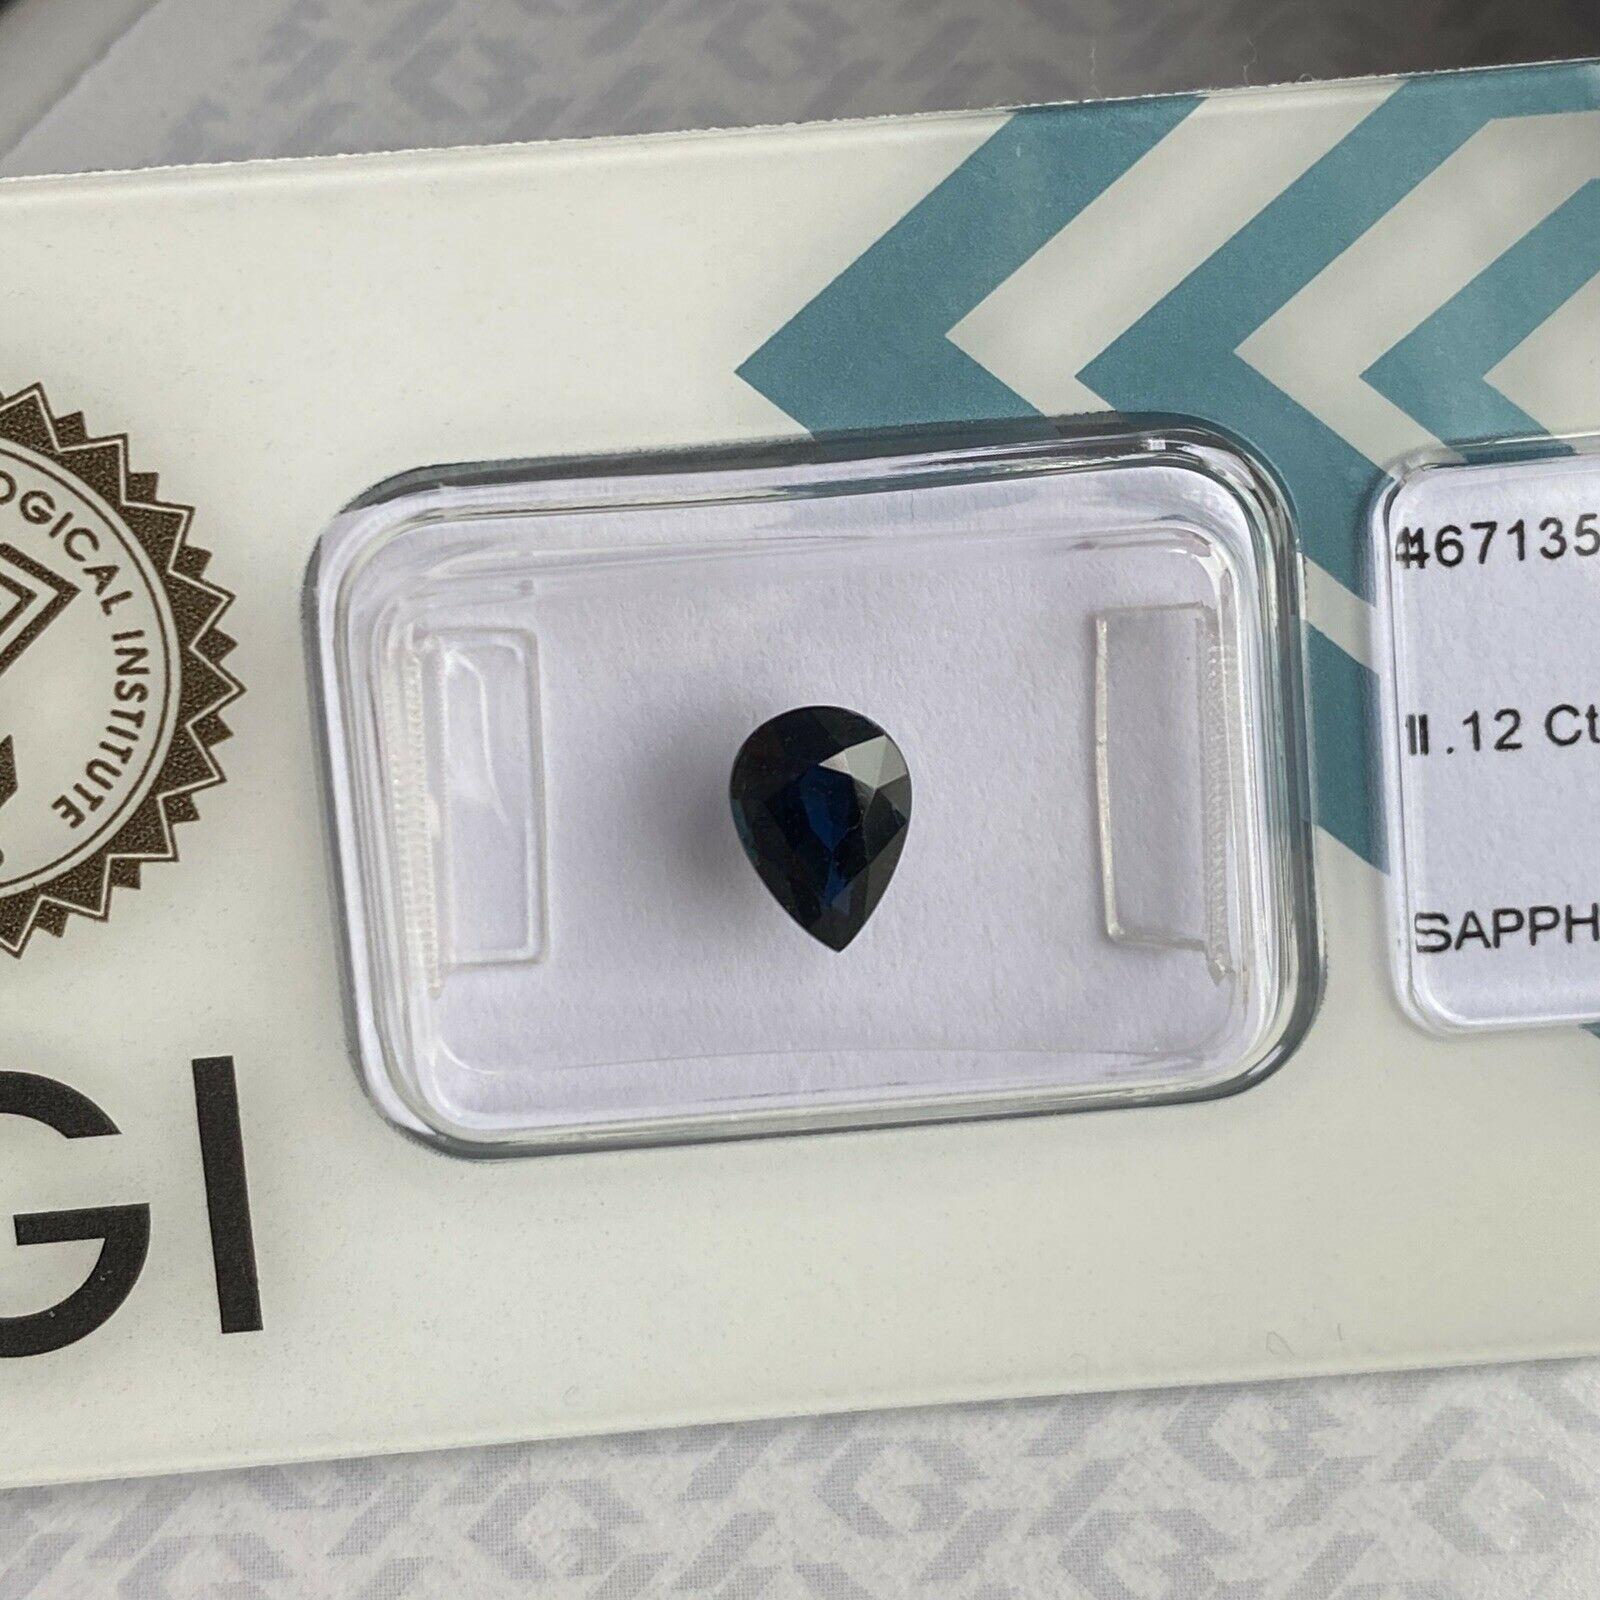 1.12ct Saphir bleu profond poire Teardrop Cut IGI Certified Loose Rare Gem

Saphir bleu profond sous blister IGI. 
1.12 Carat avec une excellente coupe poire et une très bonne clarté, une pierre propre avec seulement quelques petites inclusions